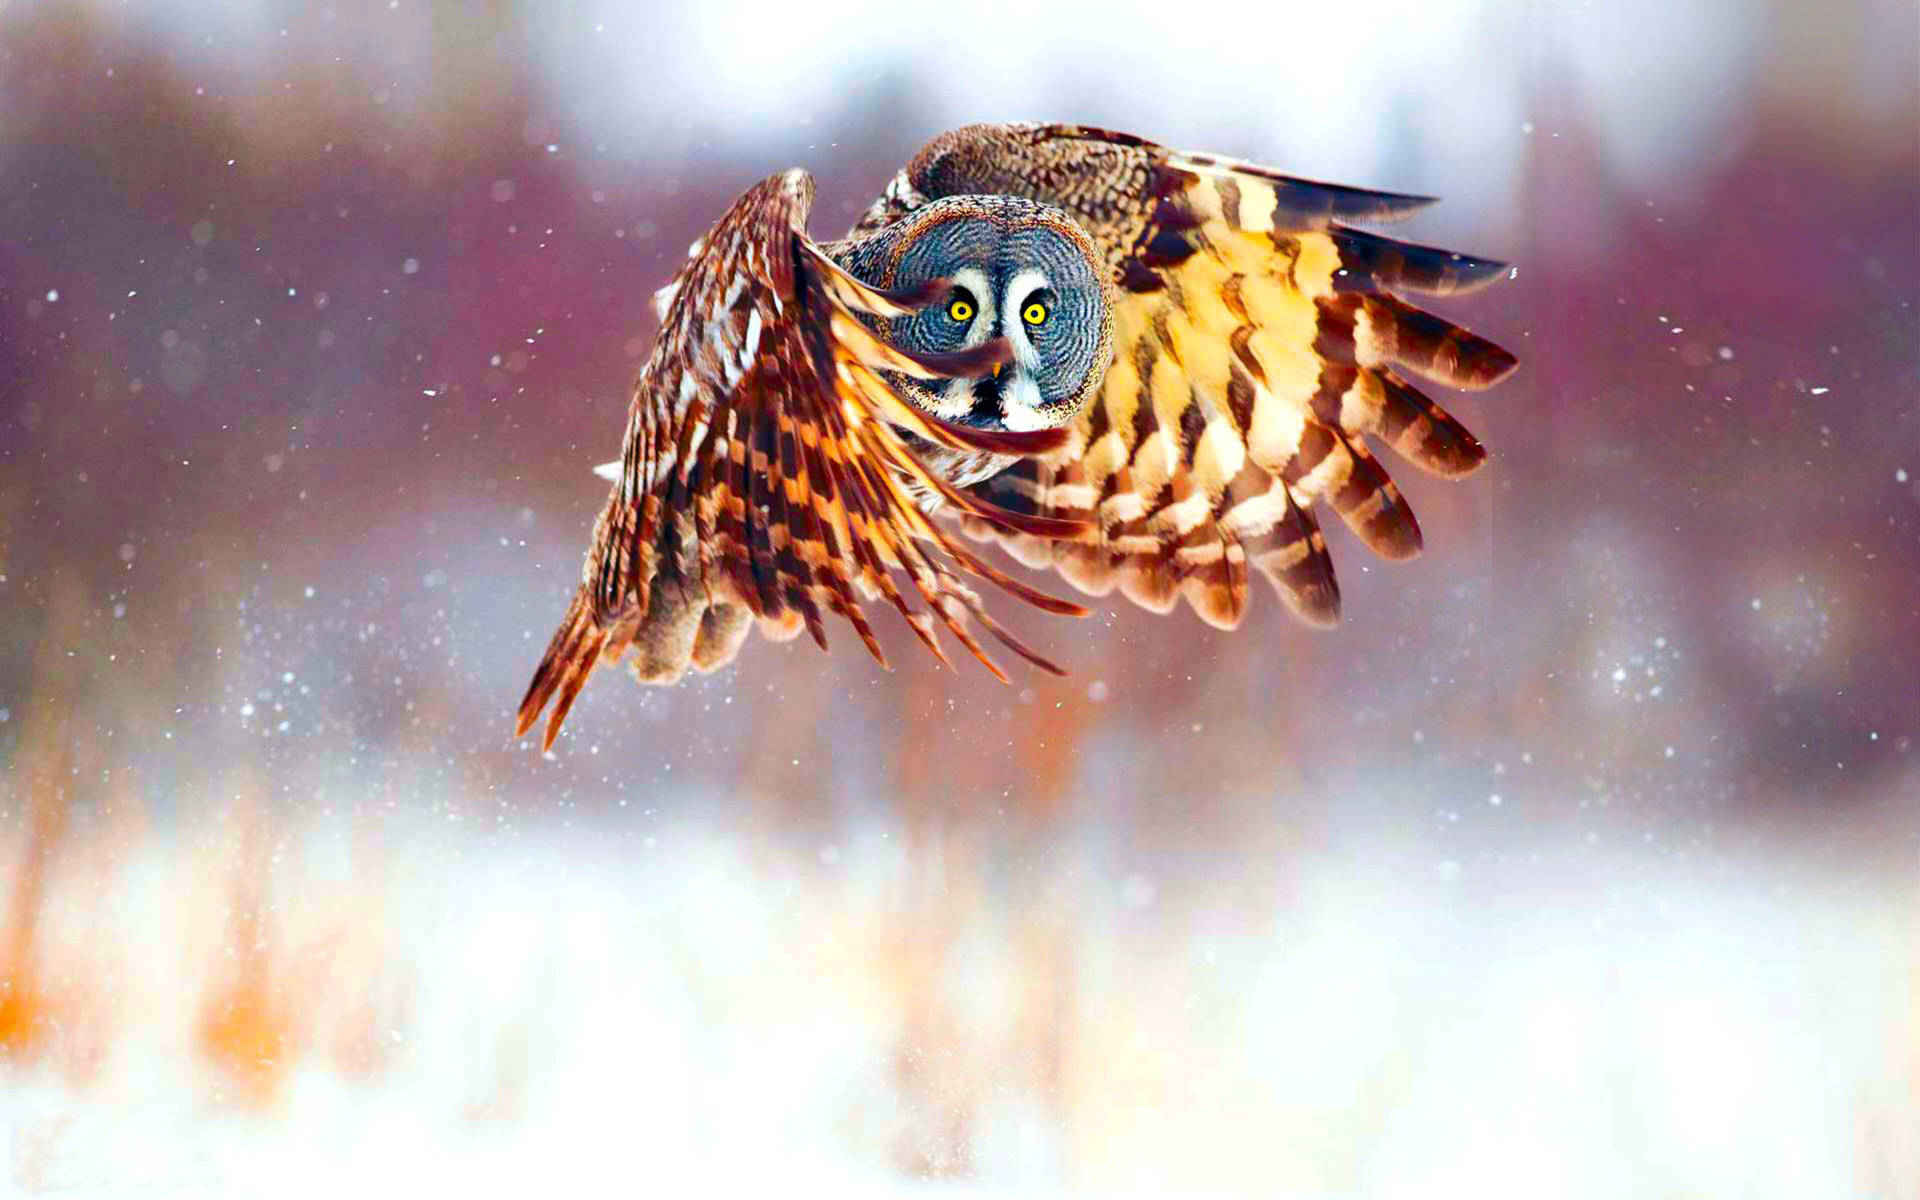 Cute Owl In Flight